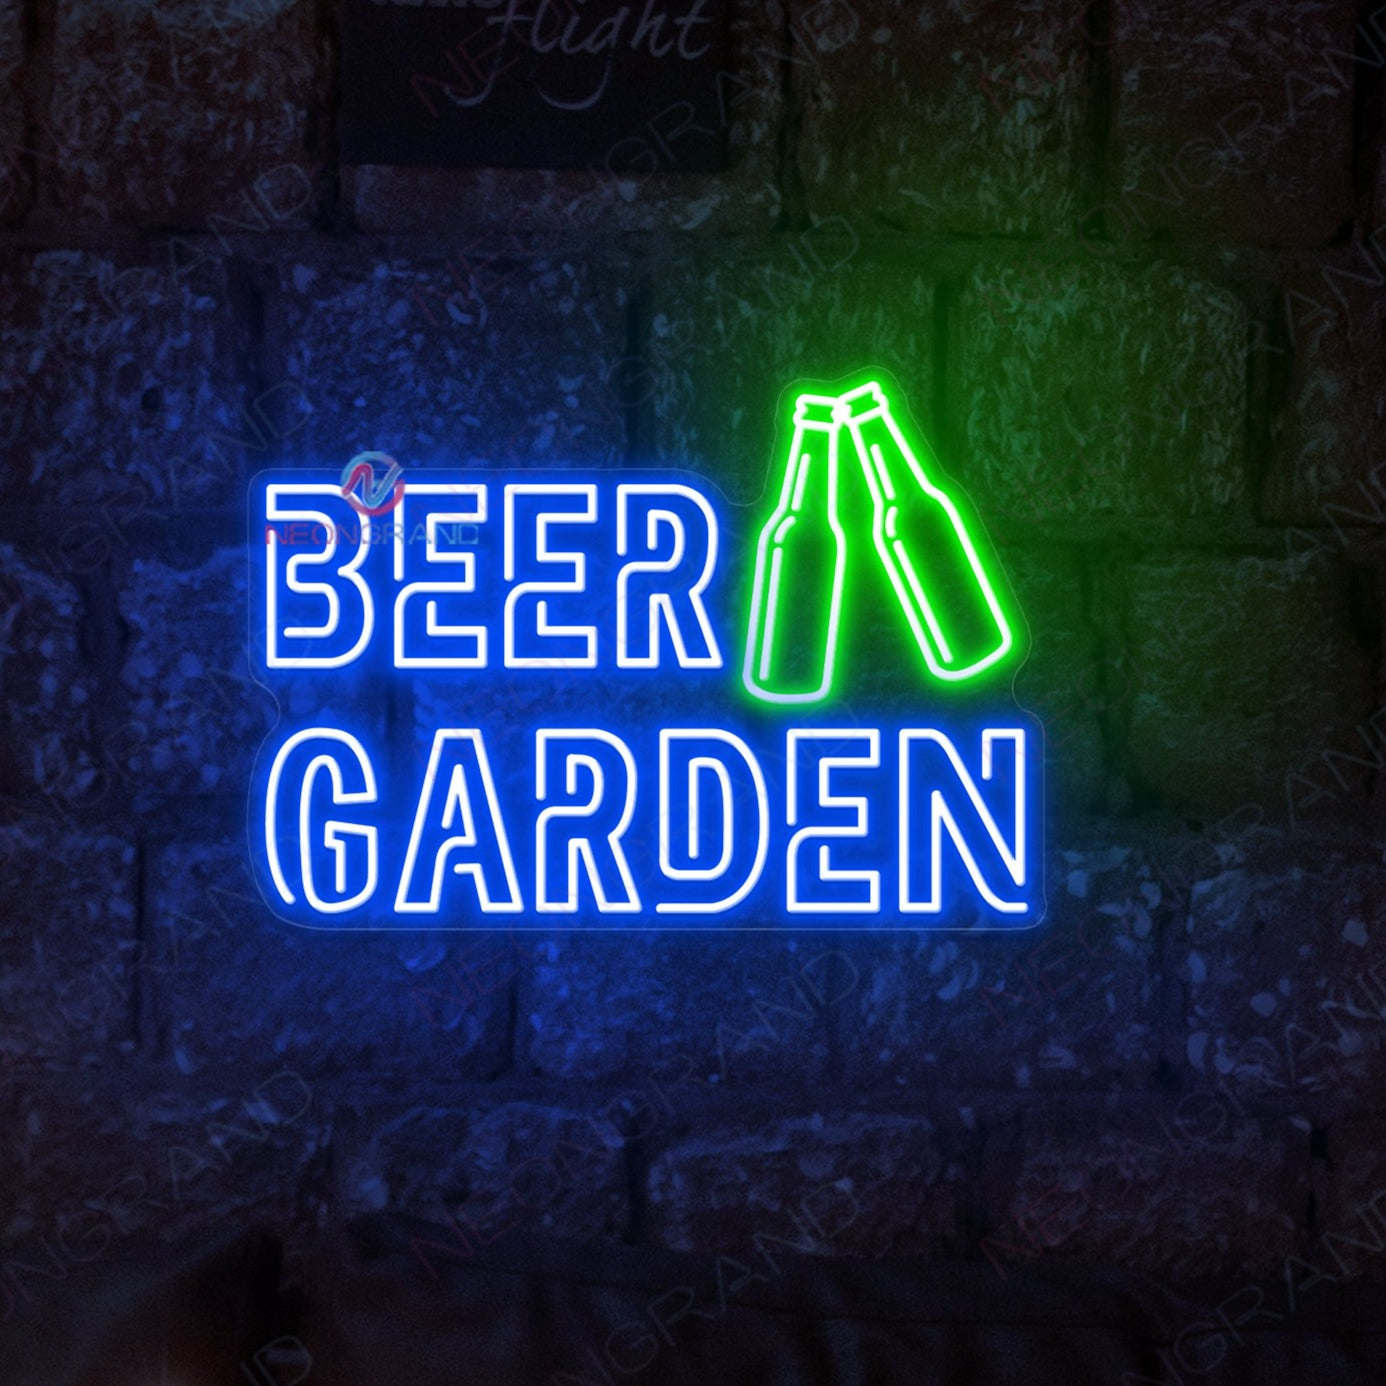 Beer Garden Neon Sign Led Light